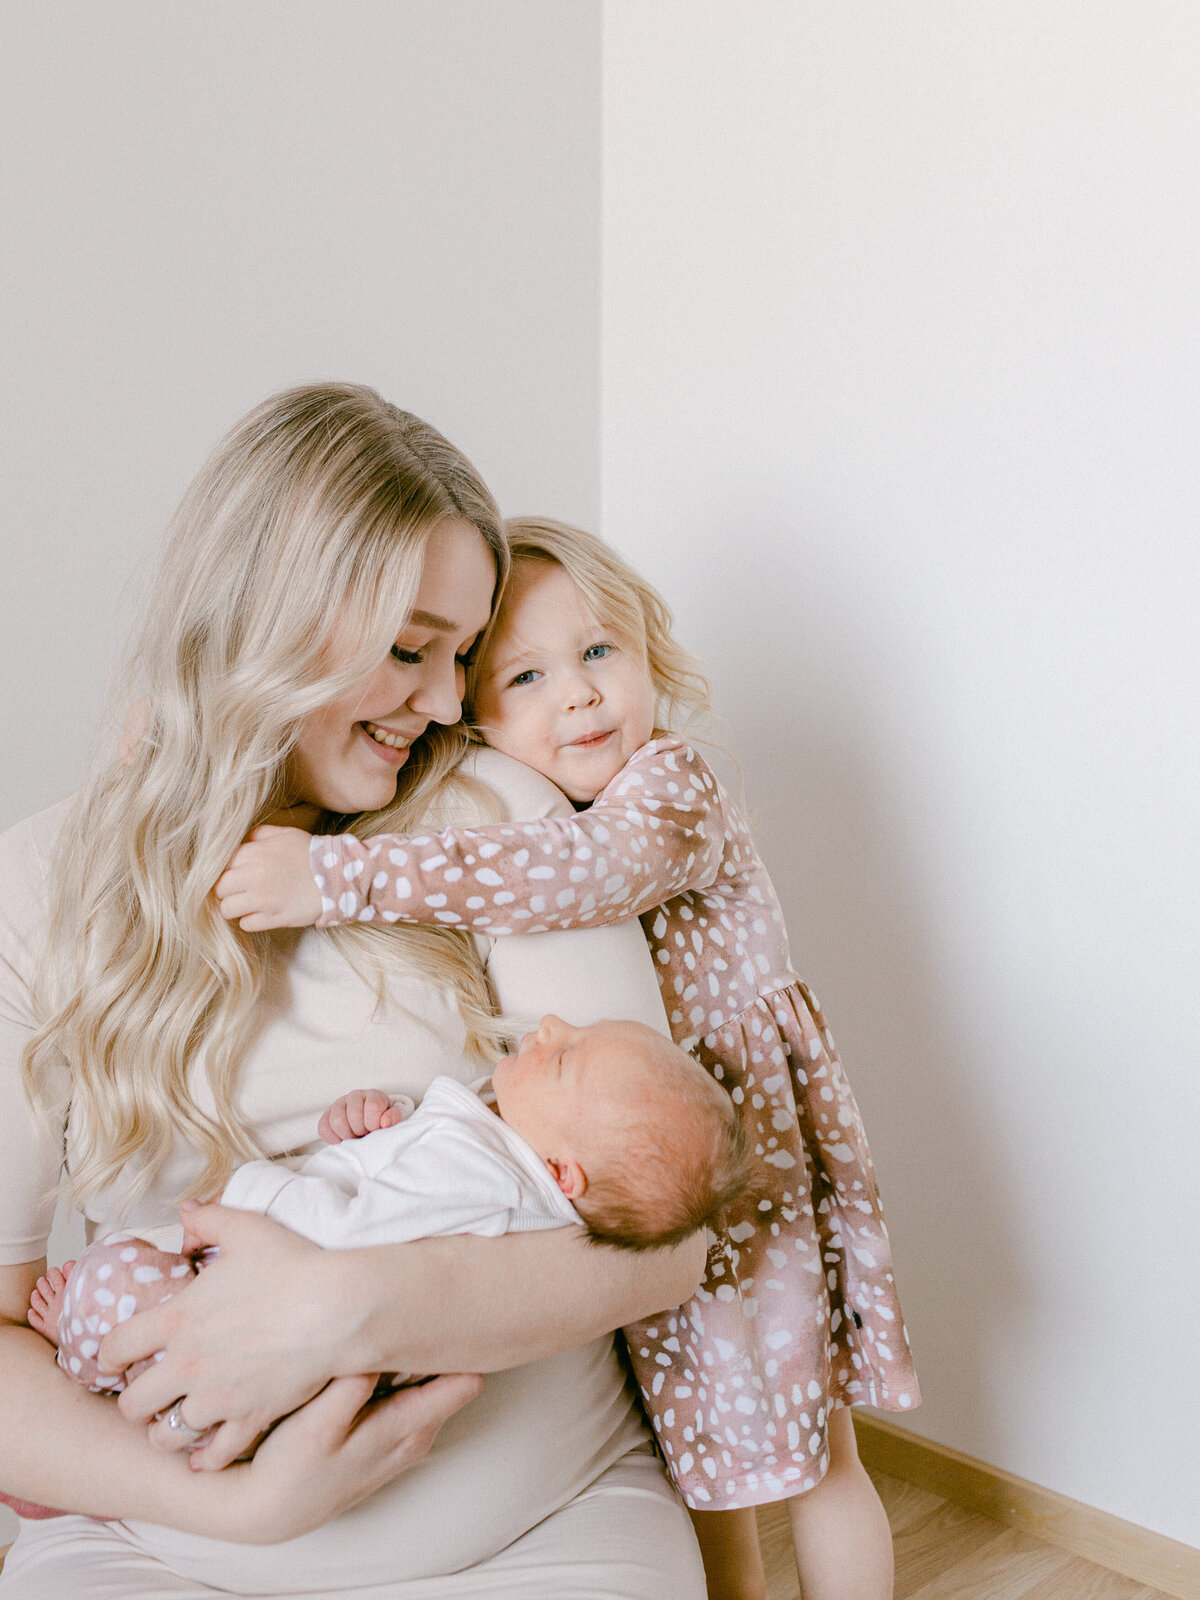 Jenni-Tuominen-photography-lifestyle-perhekuvaus-vastasyntyneenkuvaus-tampere5